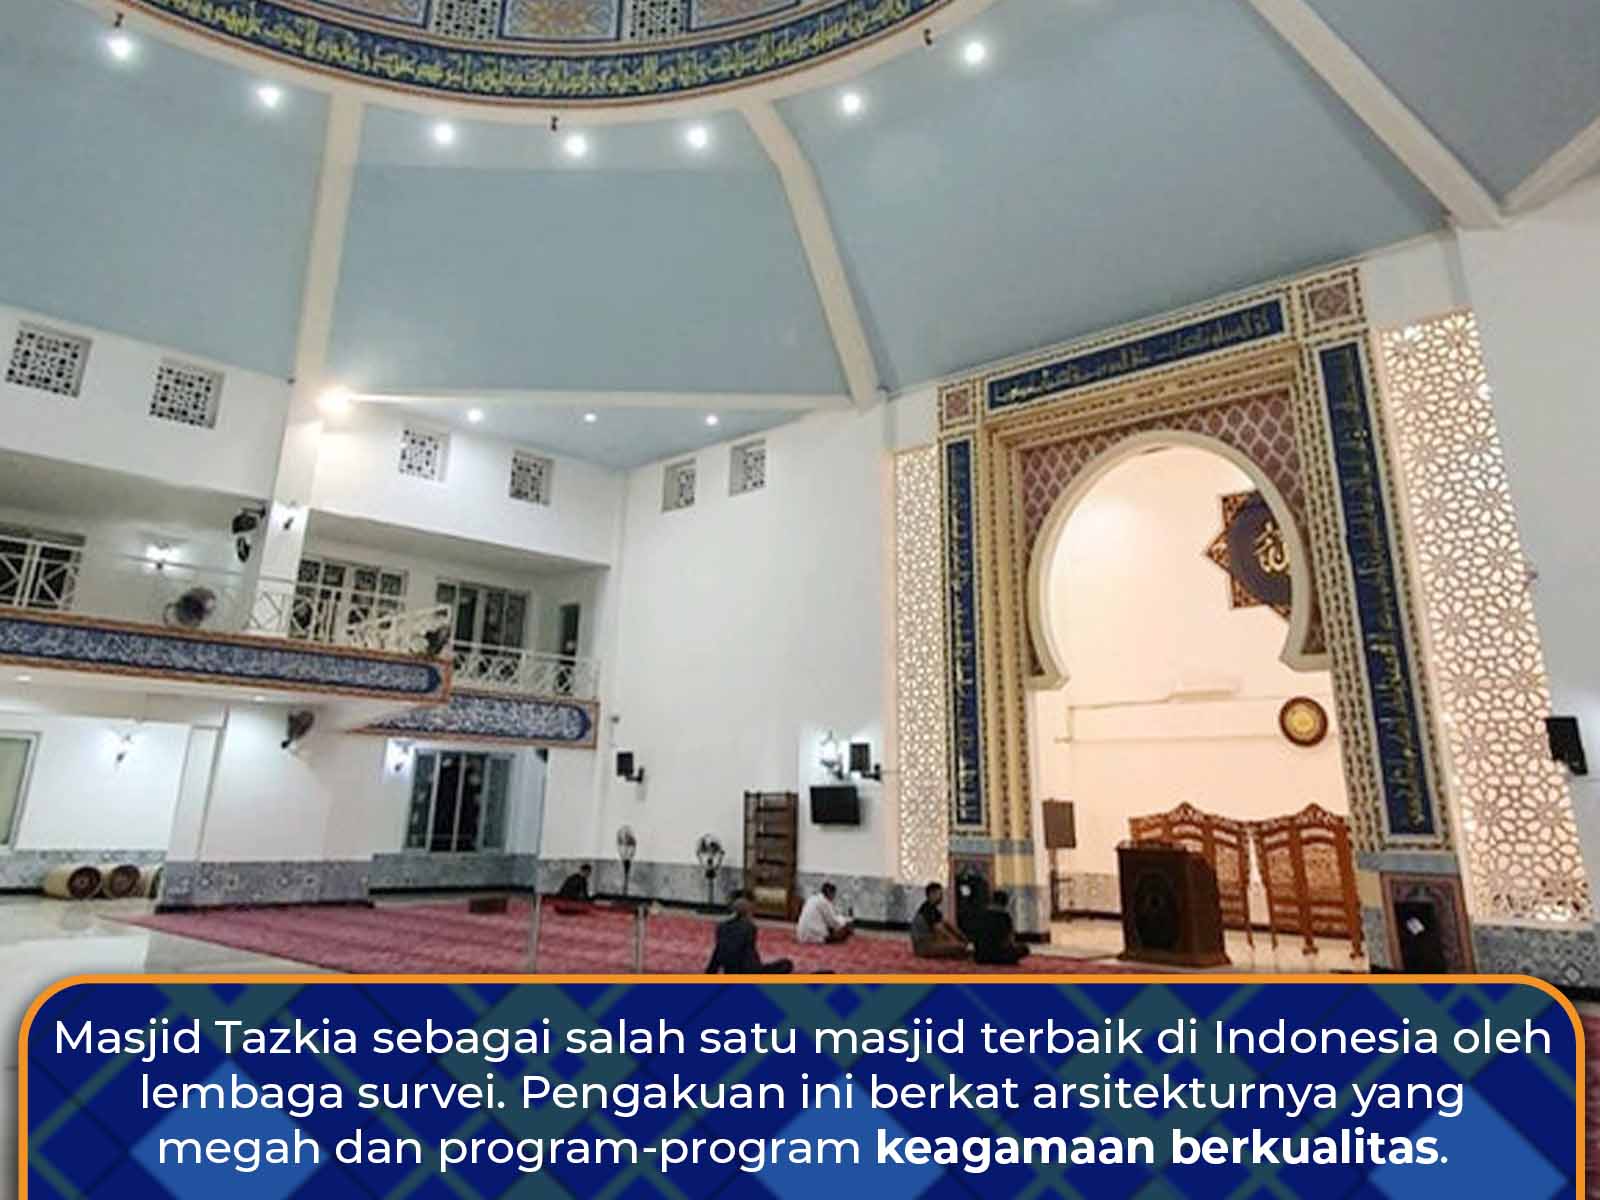 Pusat wisata Religi di masjid kampus ini